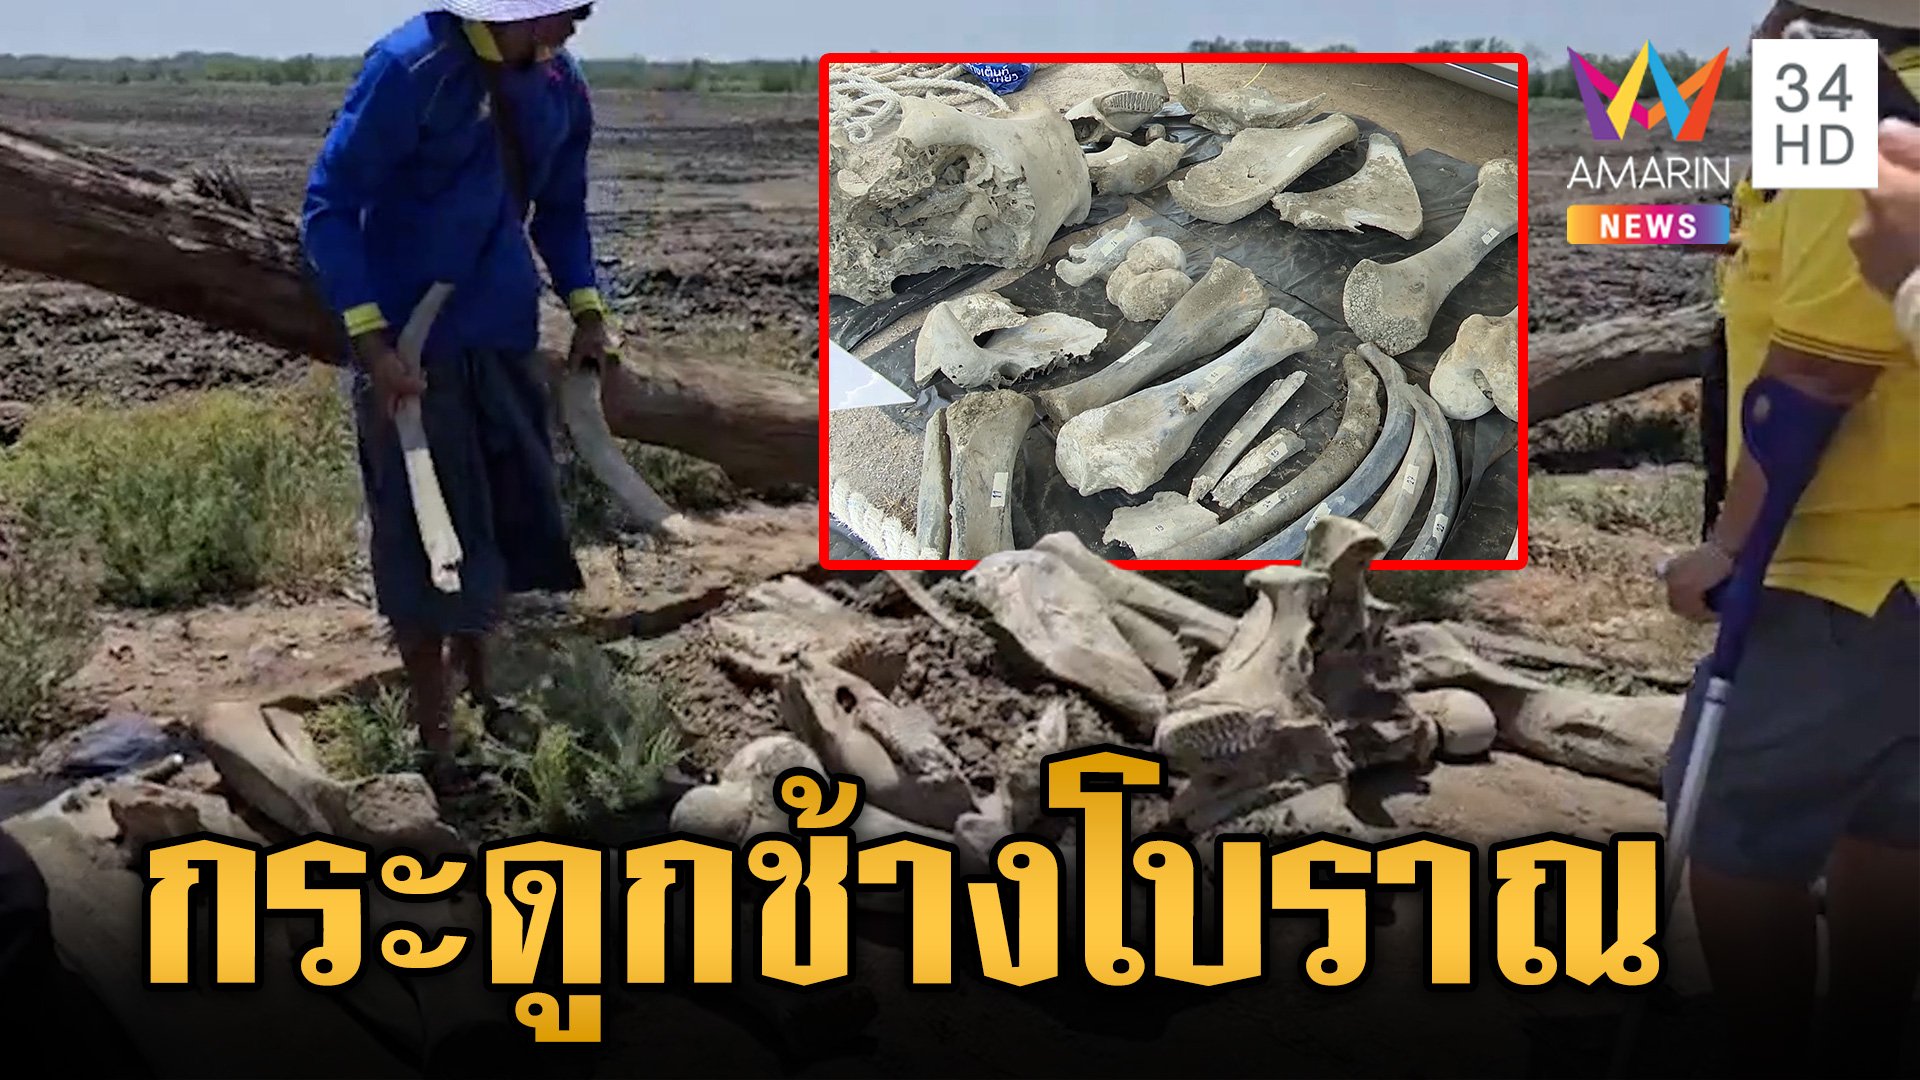 ตะลึง! พบกระดูกช้างโบราณ เชื่ออายุมากกว่า 100 ปี พื้นที่ จ.สมุทรสาคร  | ข่าวเย็นอมรินทร์ | 2 เม.ย. 67 | AMARIN TVHD34